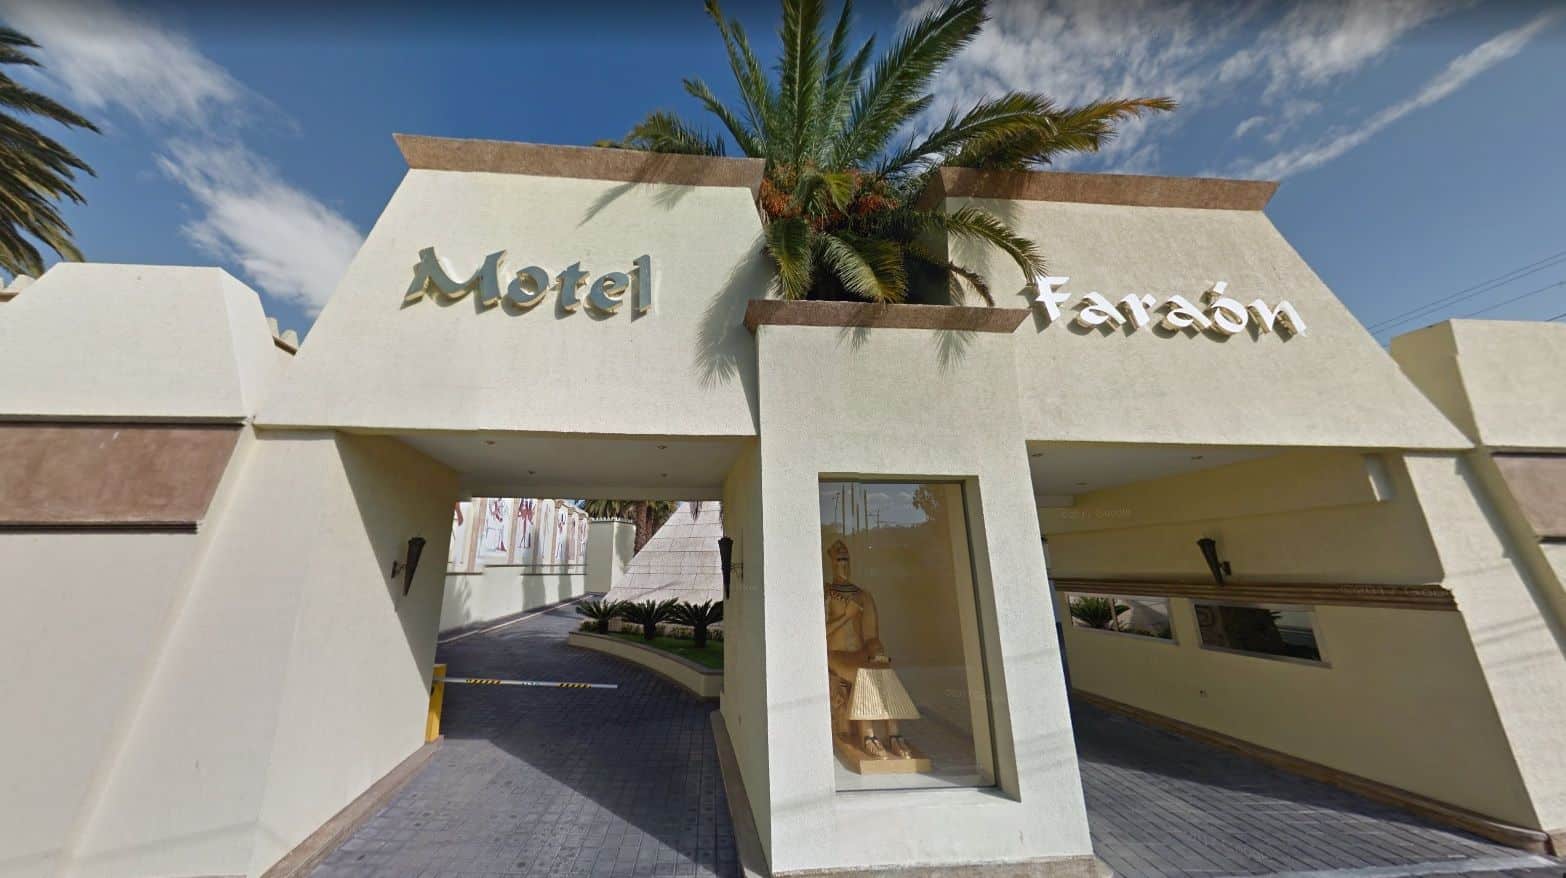 Motel Faraon Puebla Entrada